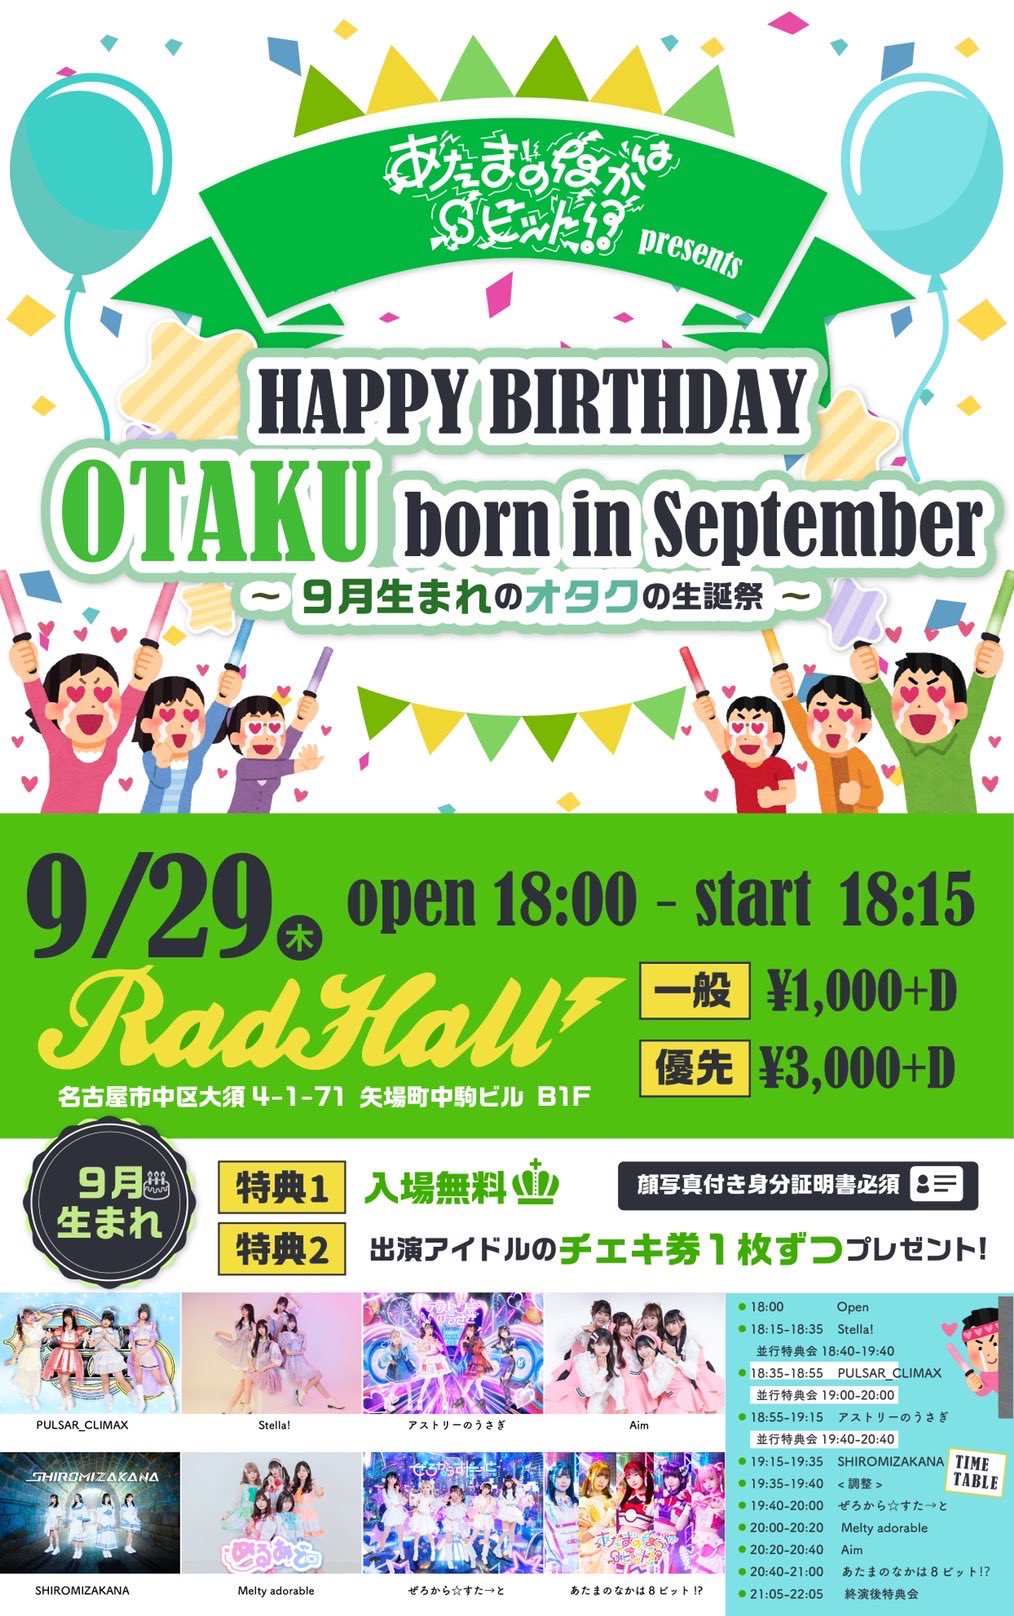 あたまのなかは8ビットpresents. HAPPY BIRTHDAY OTAKU born in September